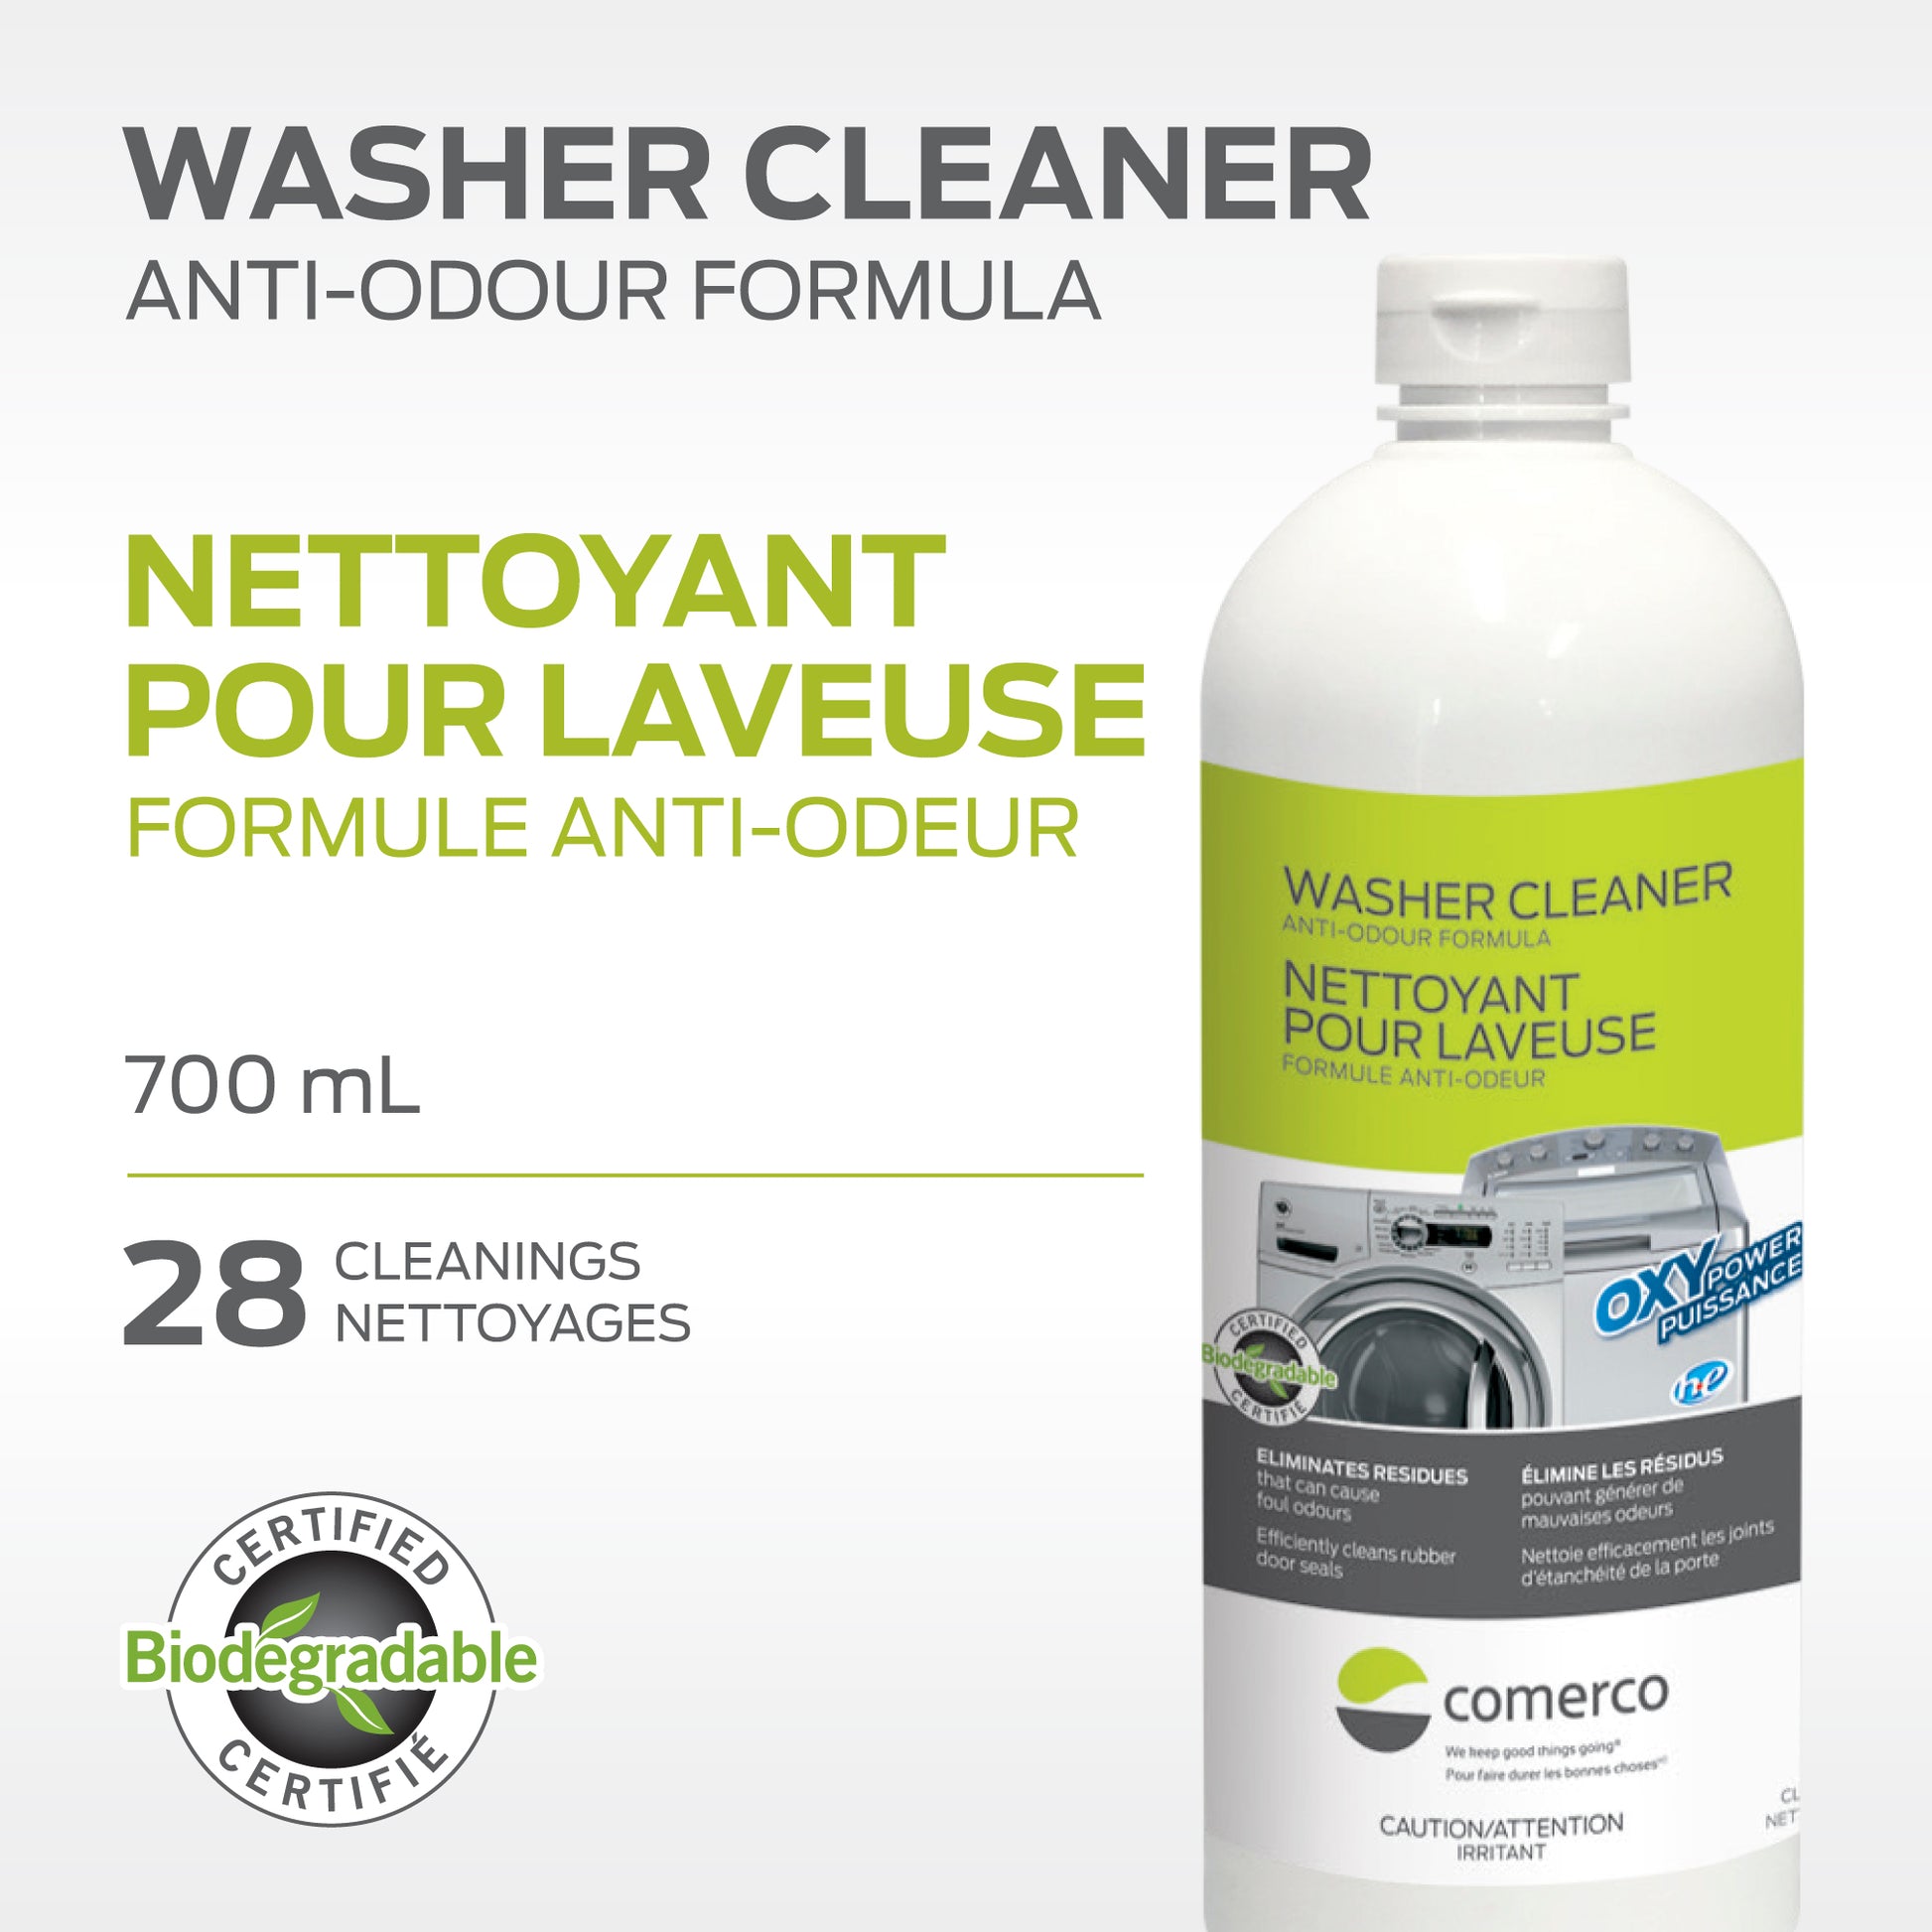 Solution nettoyante et désodorisante Tineco pour les laveuses